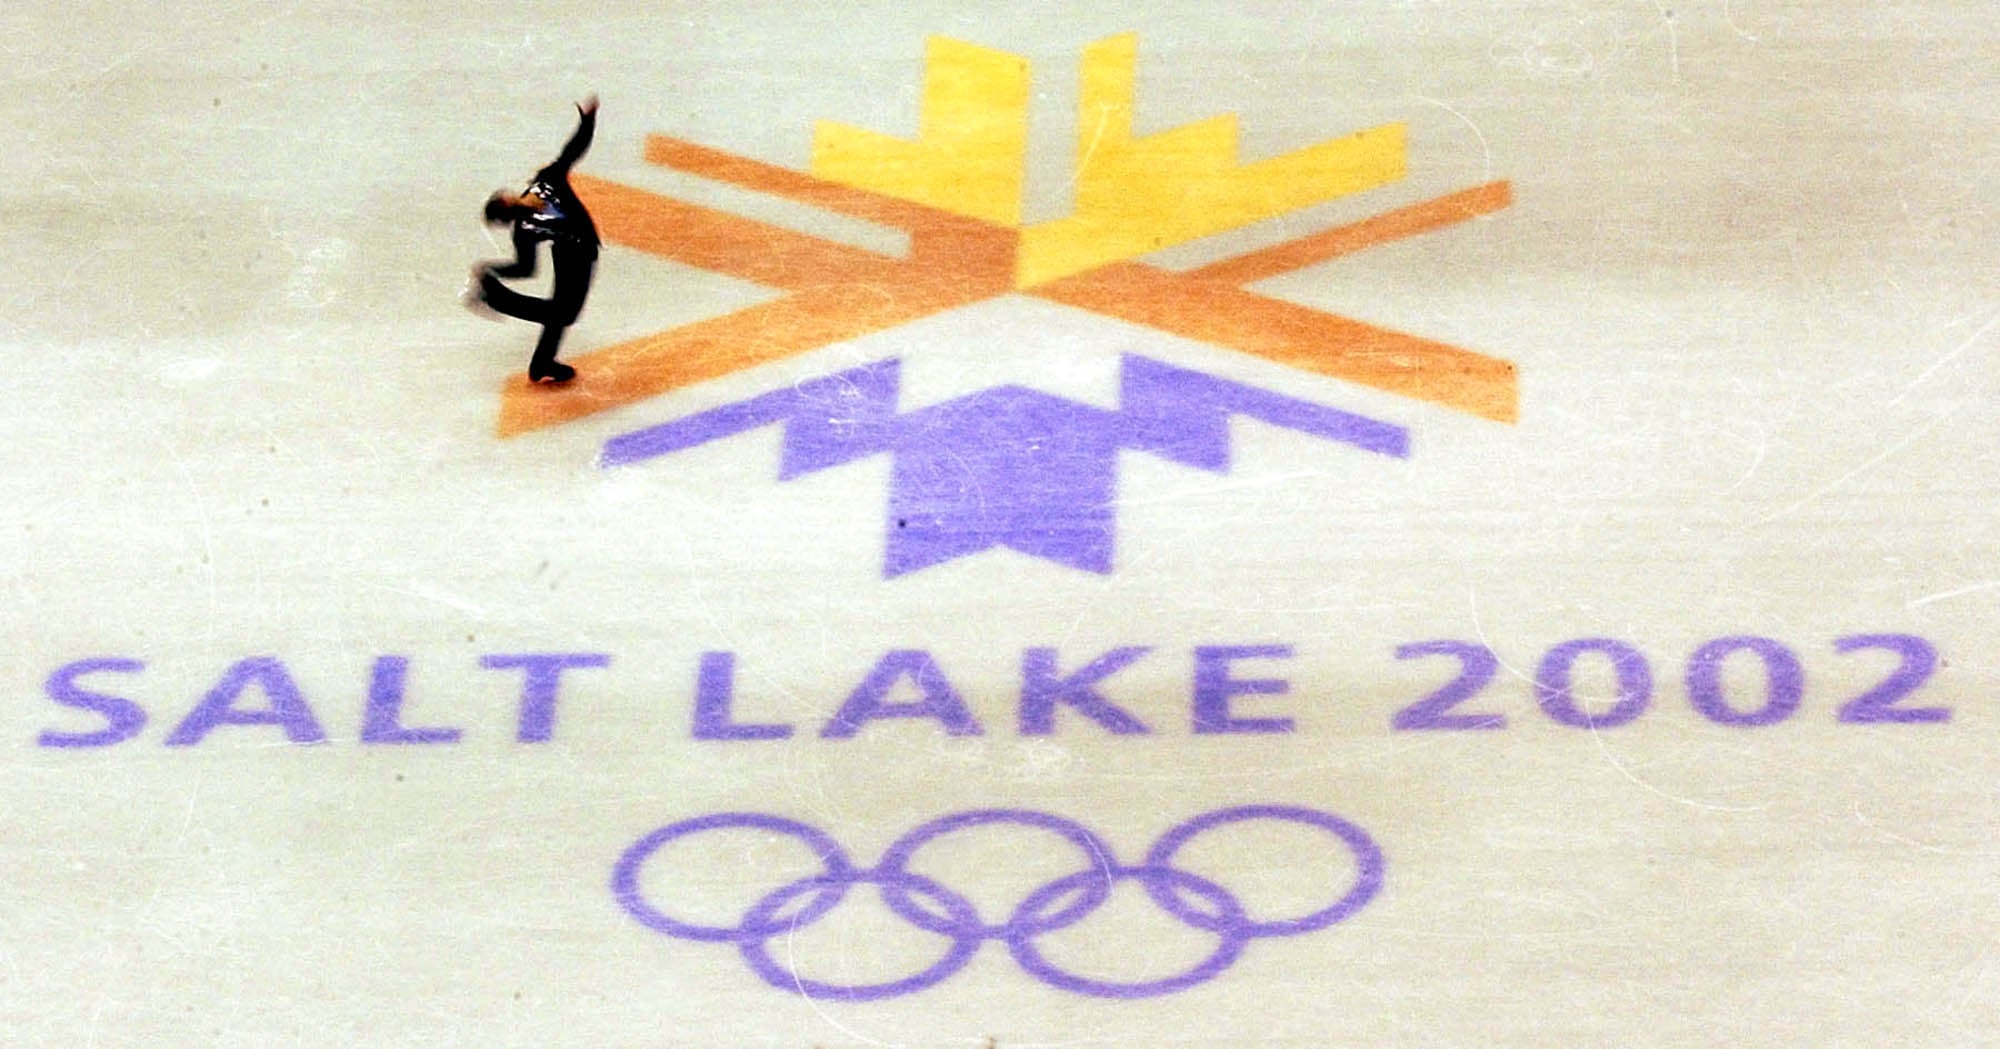 (Leah Hogsten | The Salt Lake Tribune) Ukraine's Dmitri Dmitrenko performs during the men's free skate Thursday, Feb. 14, 2002, at the Salt Lake Ice Center during the 2002 Winter Olympics in Salt Lake City.